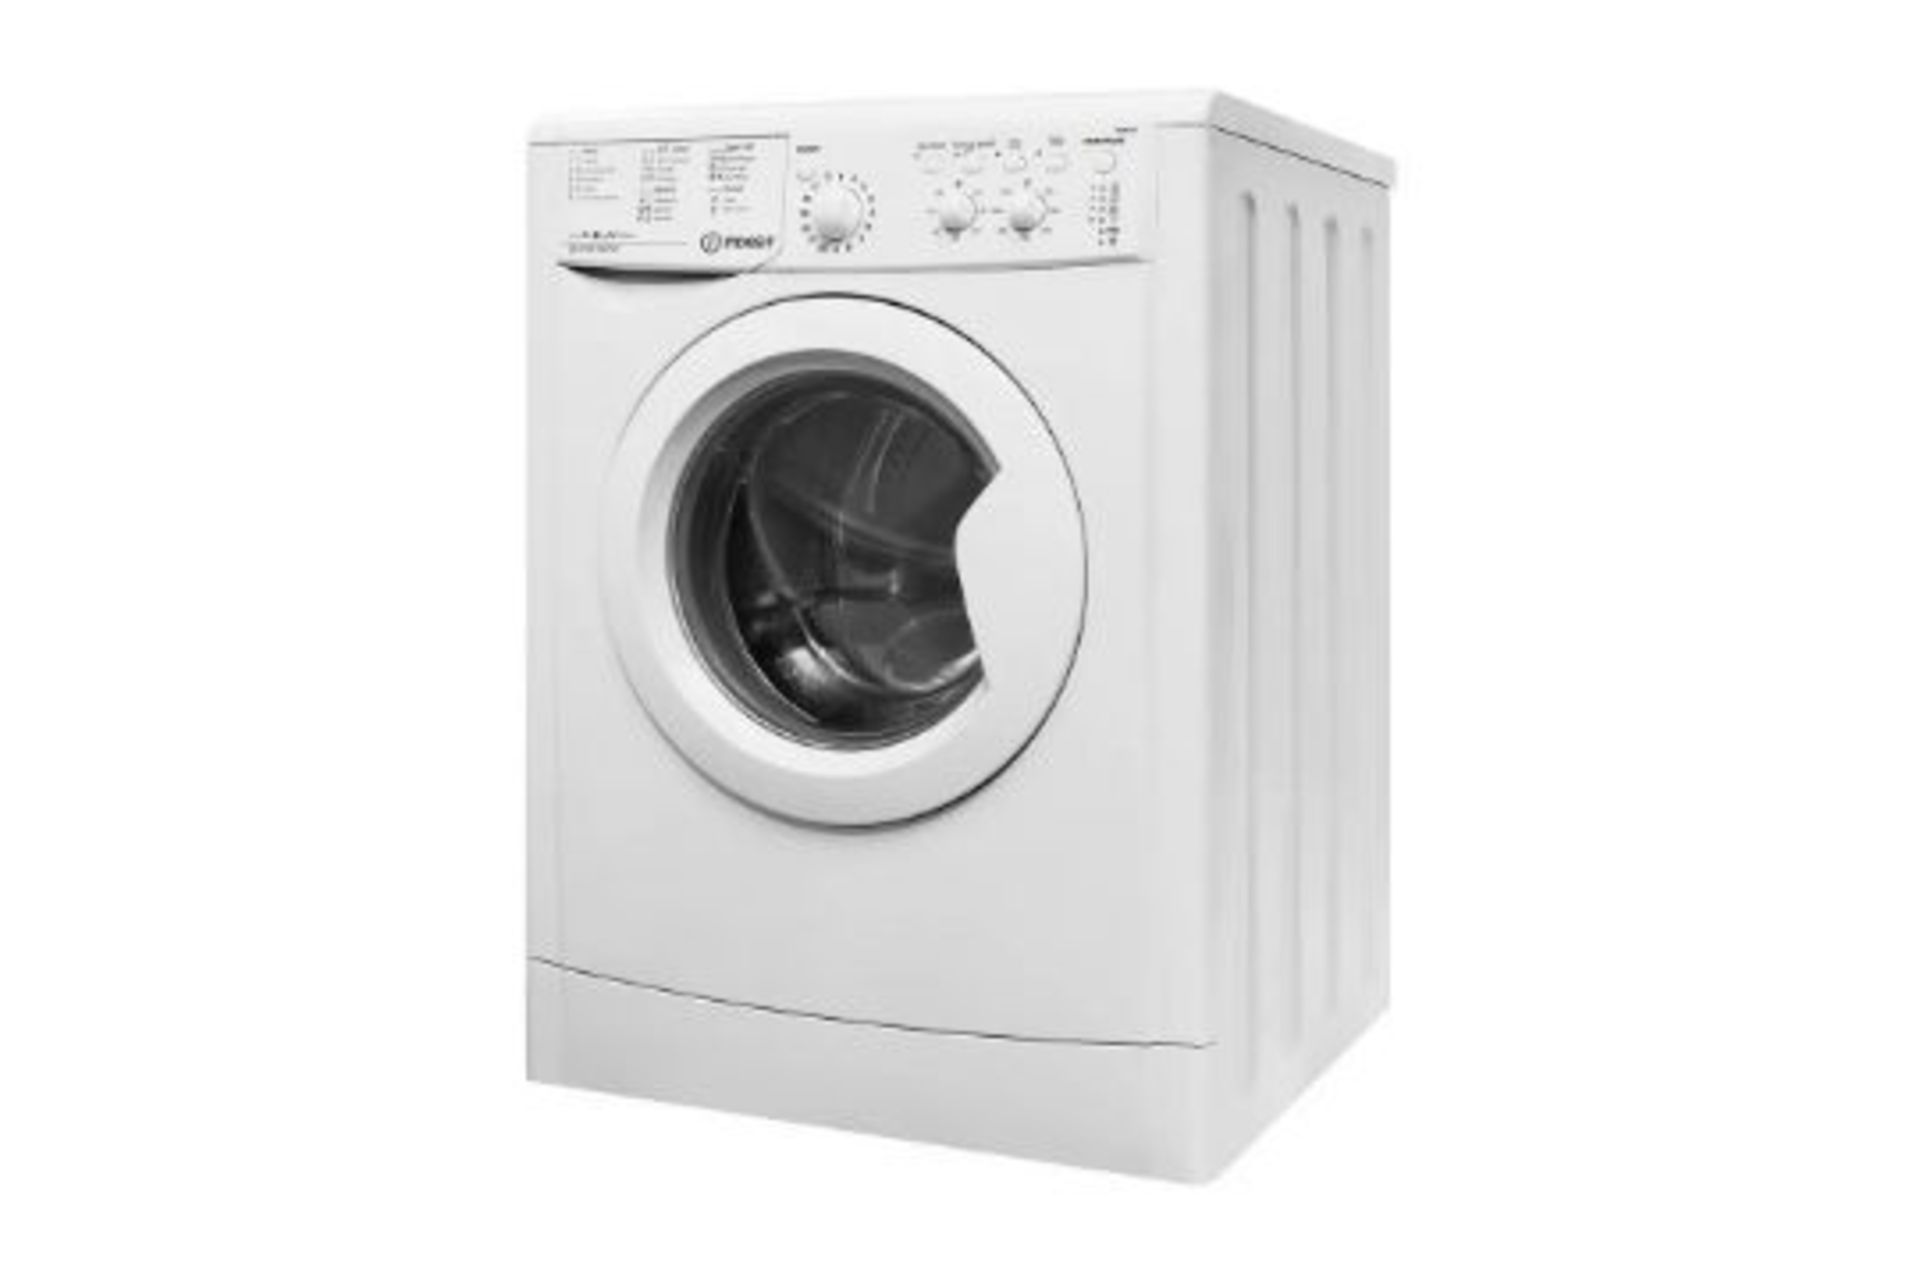 Indesit IWC81252 8KG 1200 Spin Washing Machine - White - ARGOS RRP £219.99 - Image 2 of 7